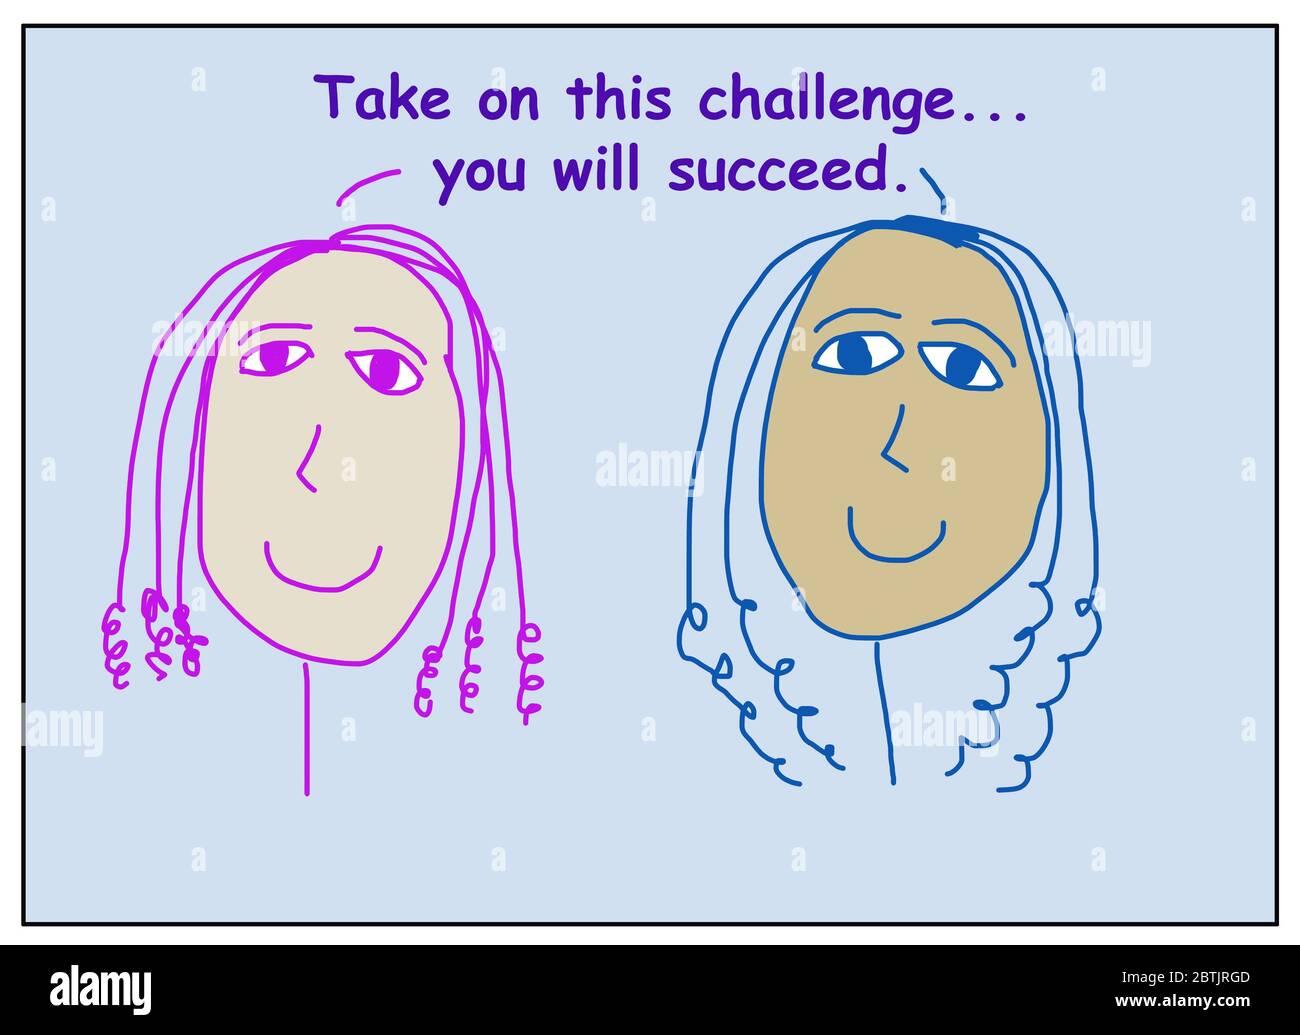 Cartone animato a colori di due donne sorridenti, belle ed etnicamente diverse che dicono di affrontare questa sfida… ci riuscirete. Foto Stock